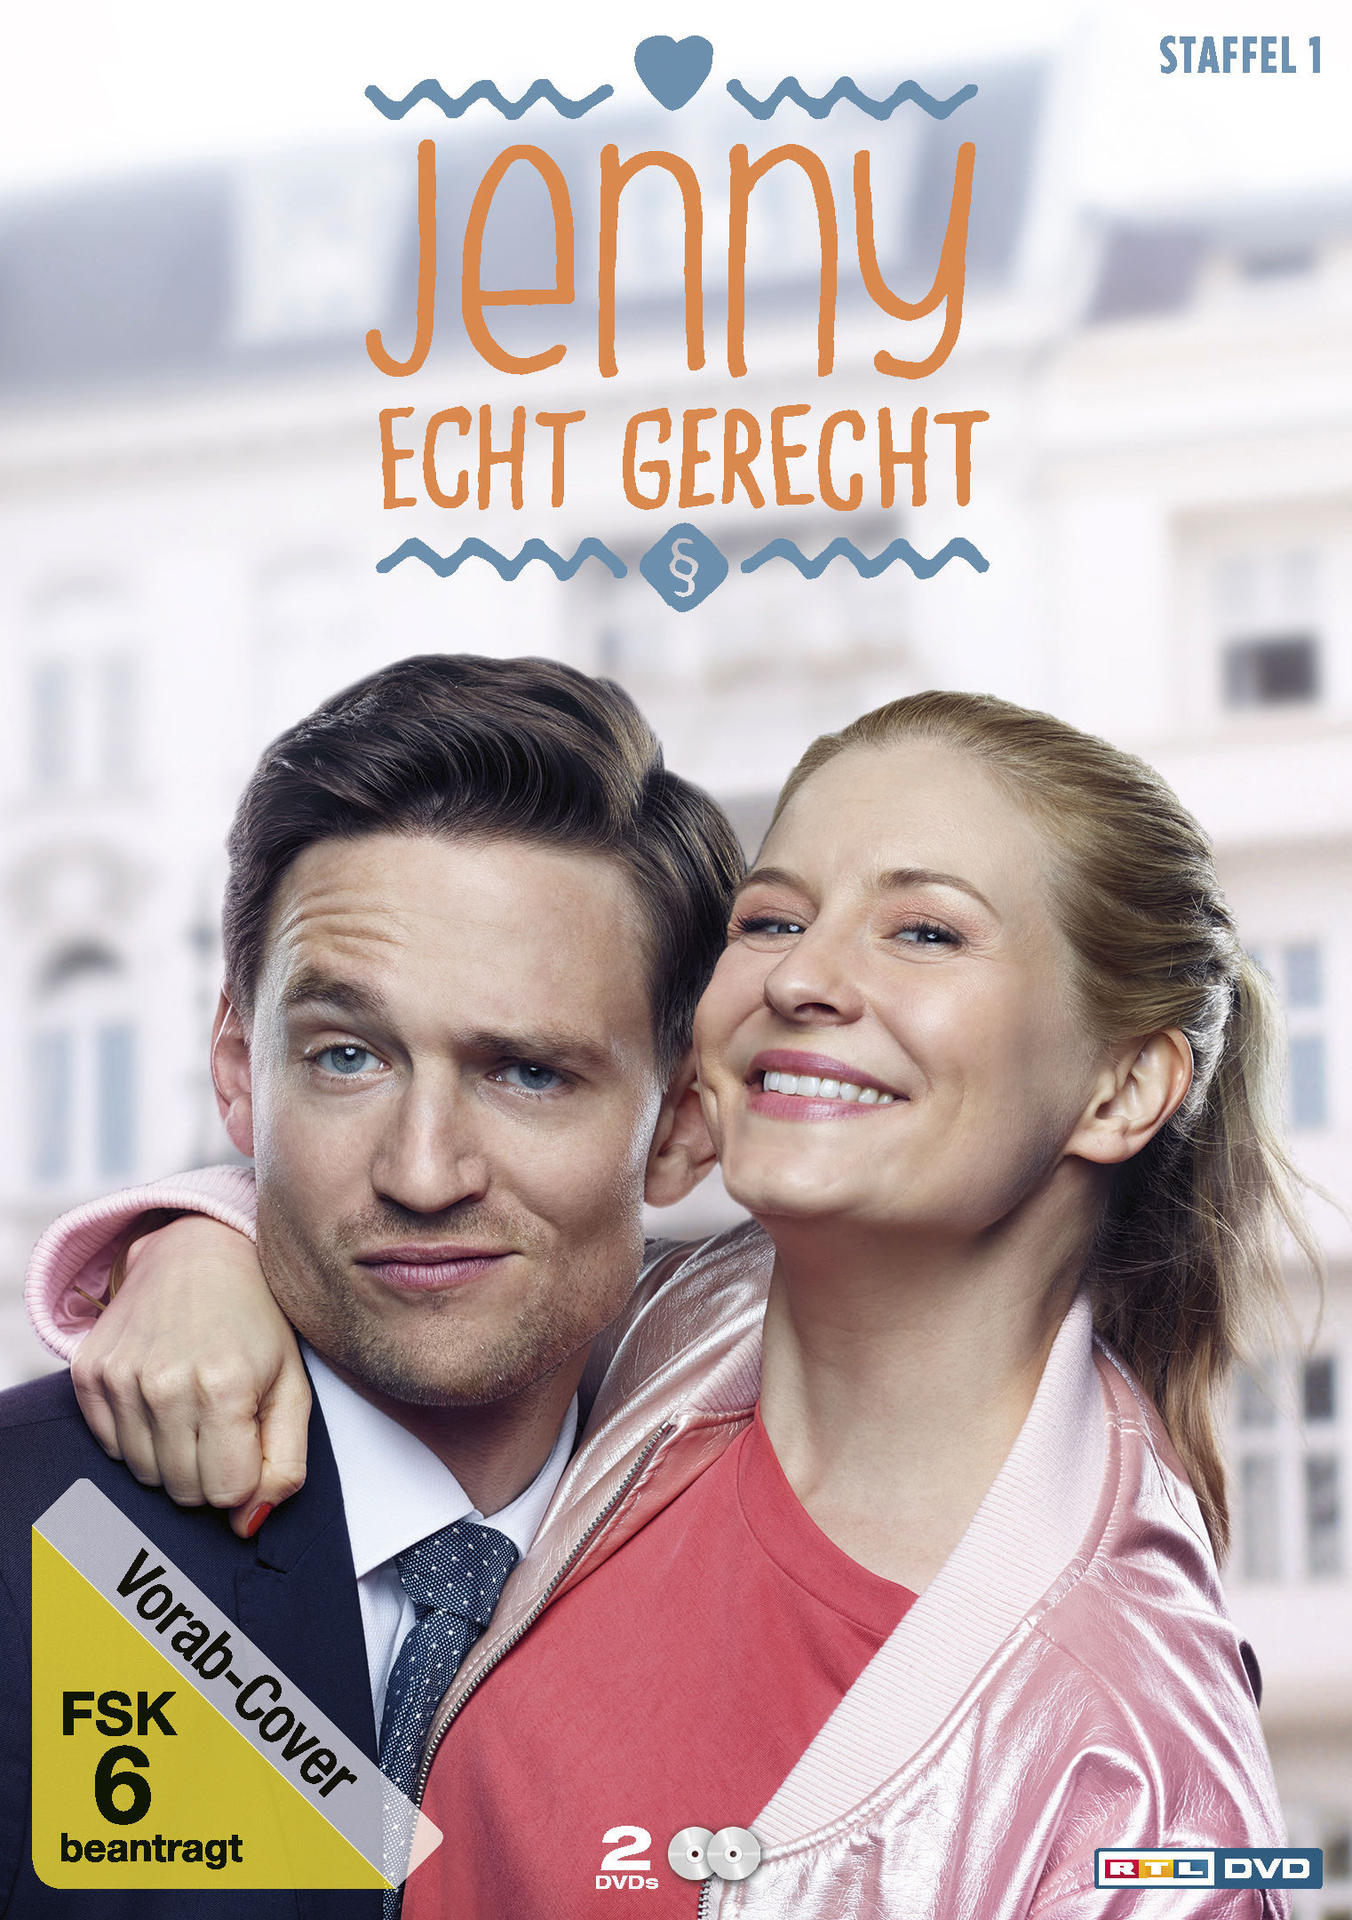 Jenny - Staffel DVD - Echt Gerecht 1